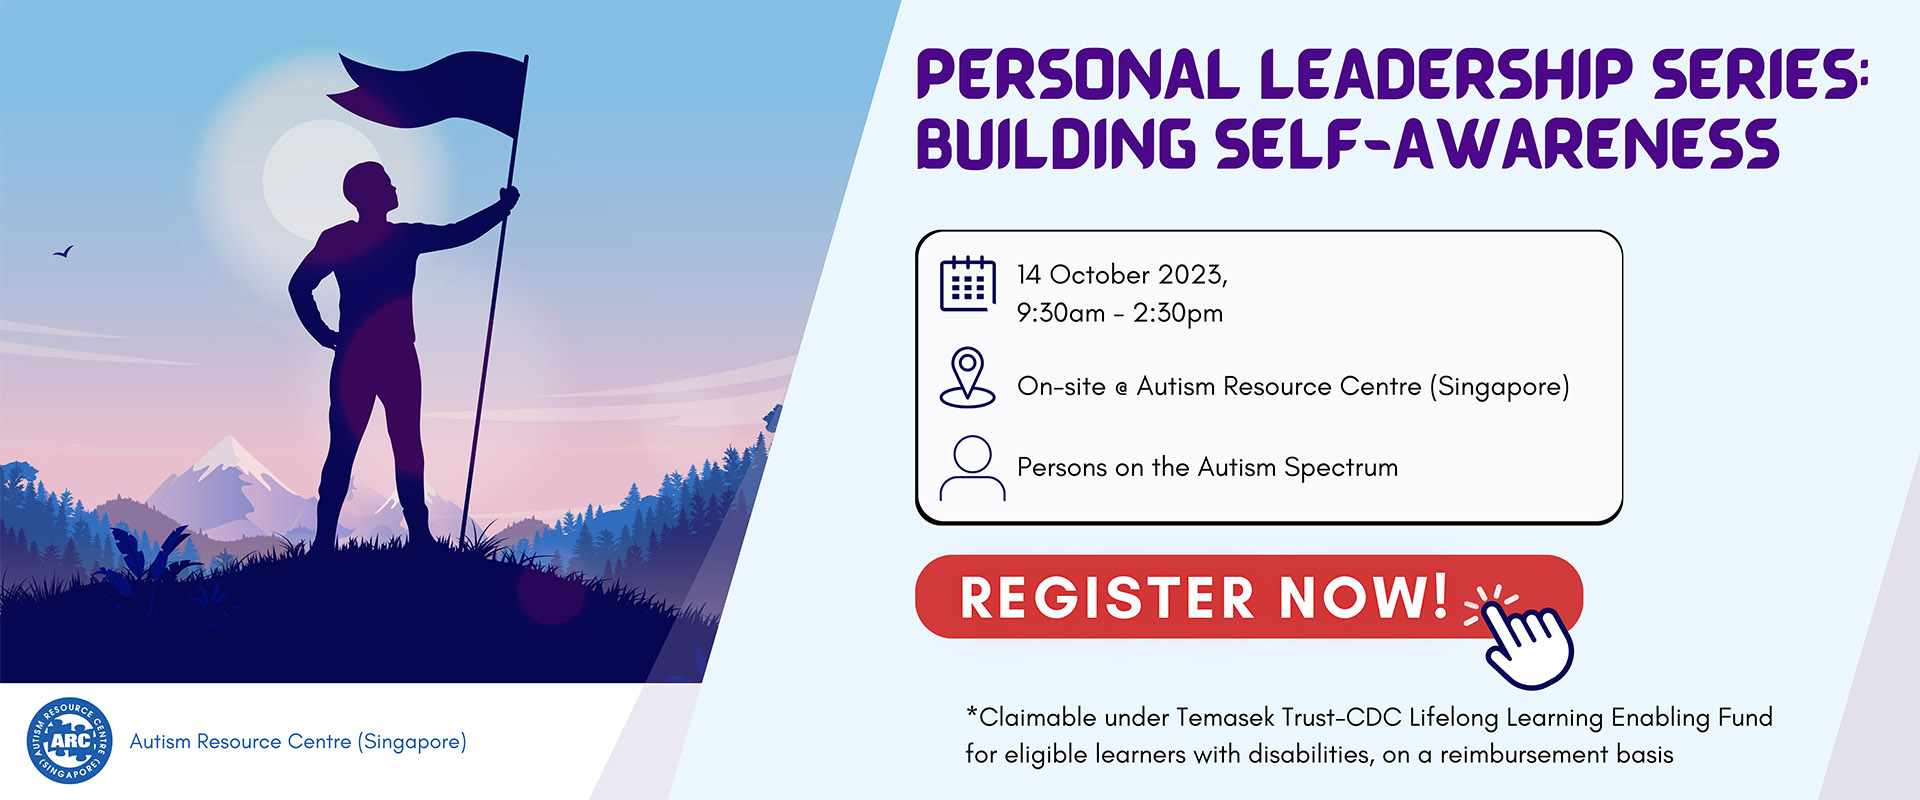 Personal Leadership Series: Building Self-Awareness